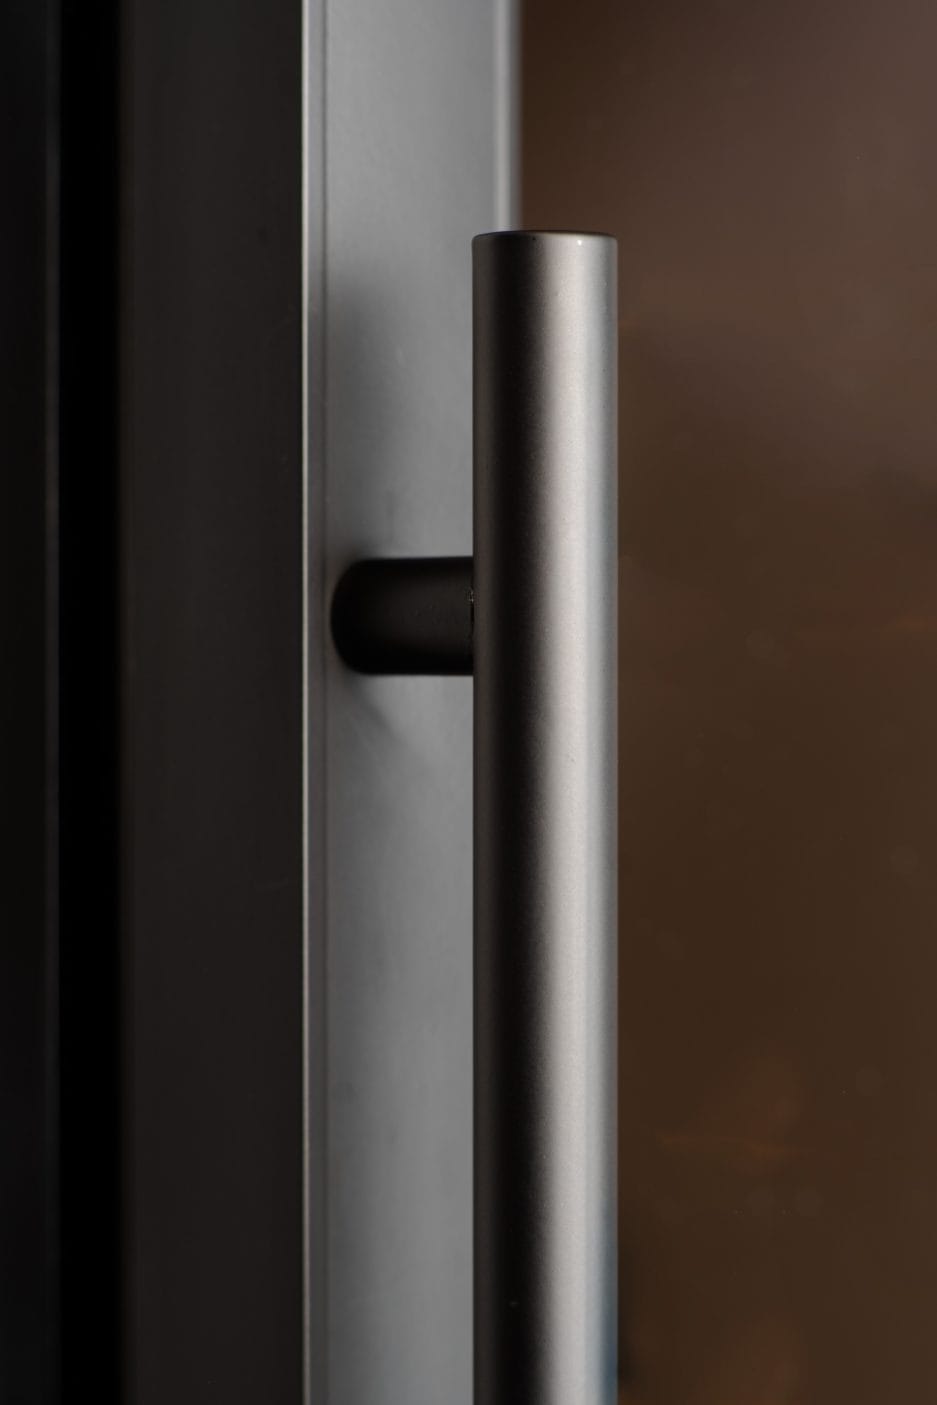 Nahaufnahme eines Bierklimaschranks (190 Liter, Höhe 124 cm, Mehrzonen) an einer dunklen Glastür, die das schlanke, zylindrische Design und die matte Oberfläche hervorhebt.